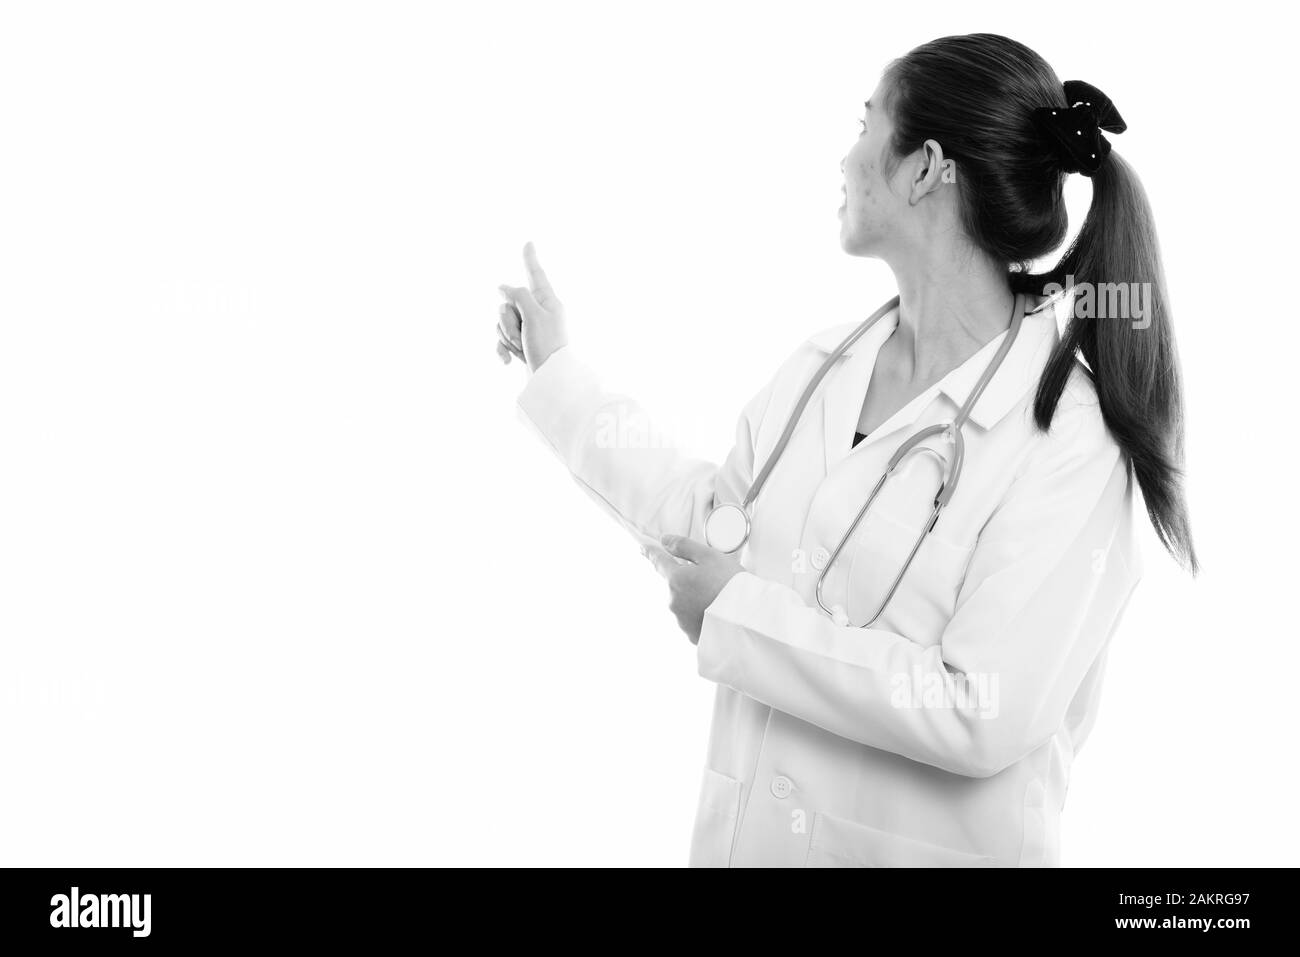 Vue arrière de Young Asian woman doctor montrant quelque chose sur le mur Banque D'Images